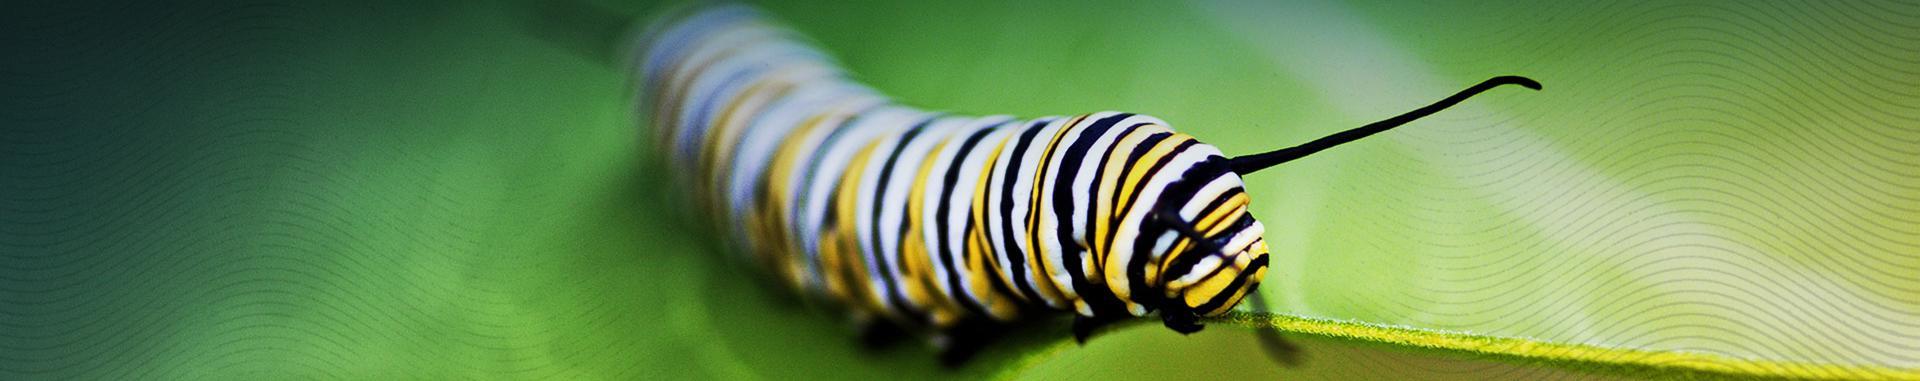 努力成长 full-color monarch butterfly caterpillar on a leaf panoramic photo